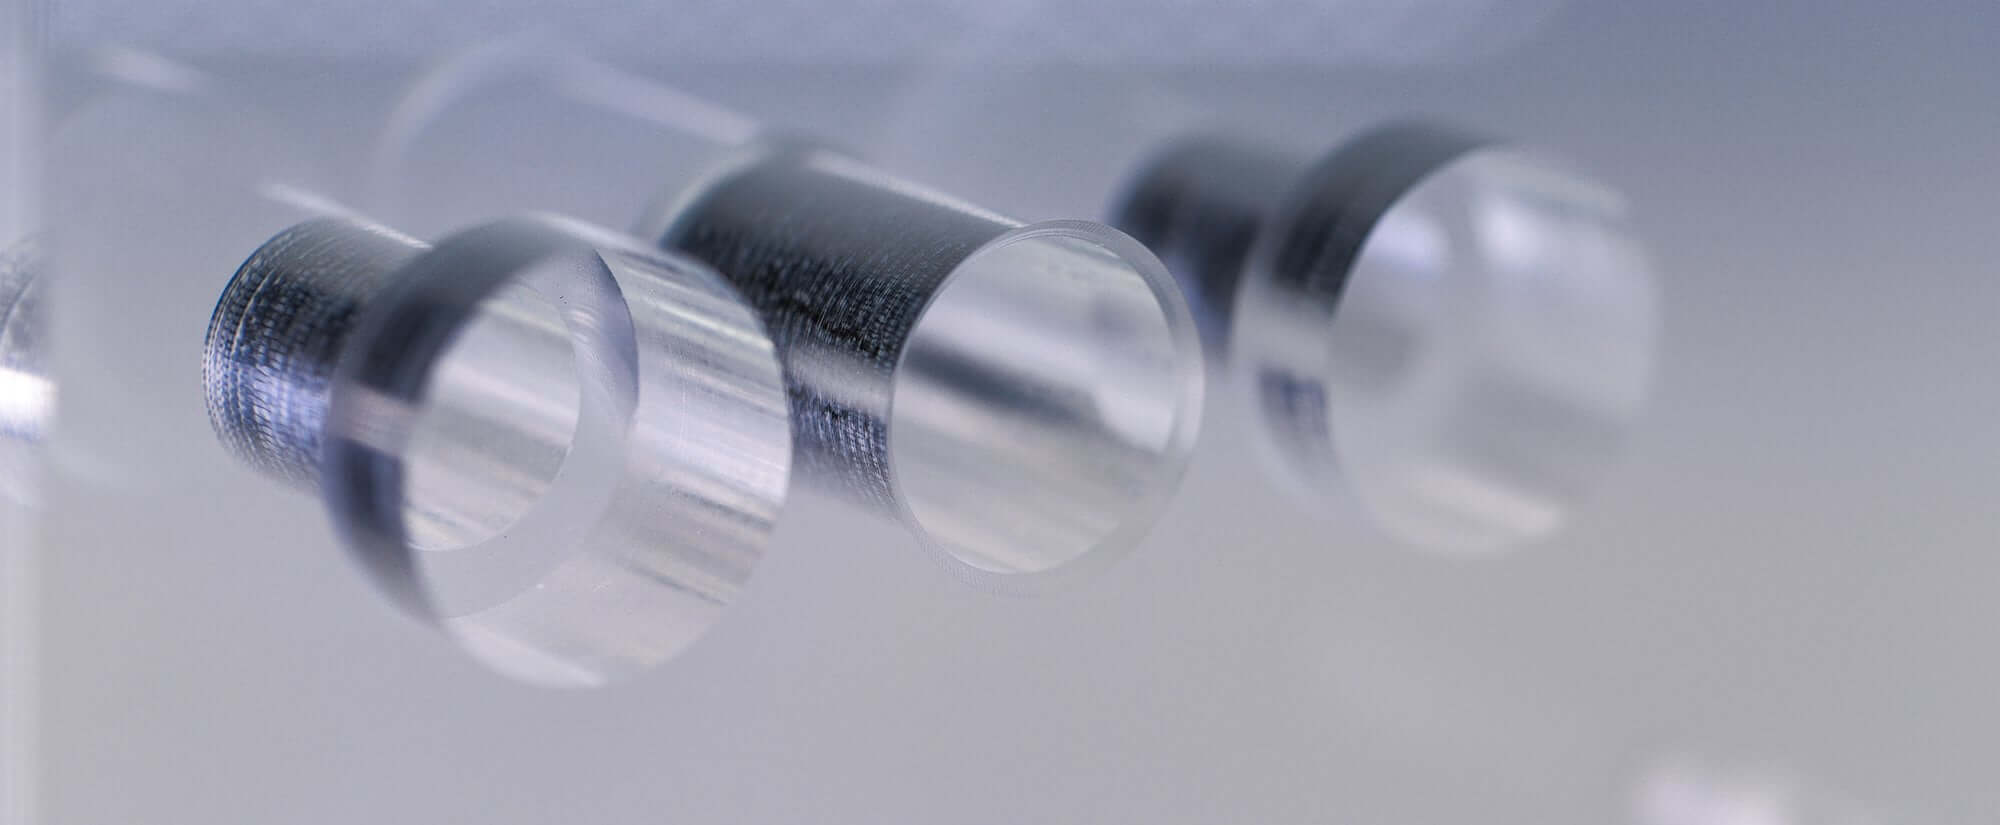 Plaque de base acryline en verre acrylic avec des alésages profonds pièces techniques forées profondément percés accessoires moulus de base partie acrylic production